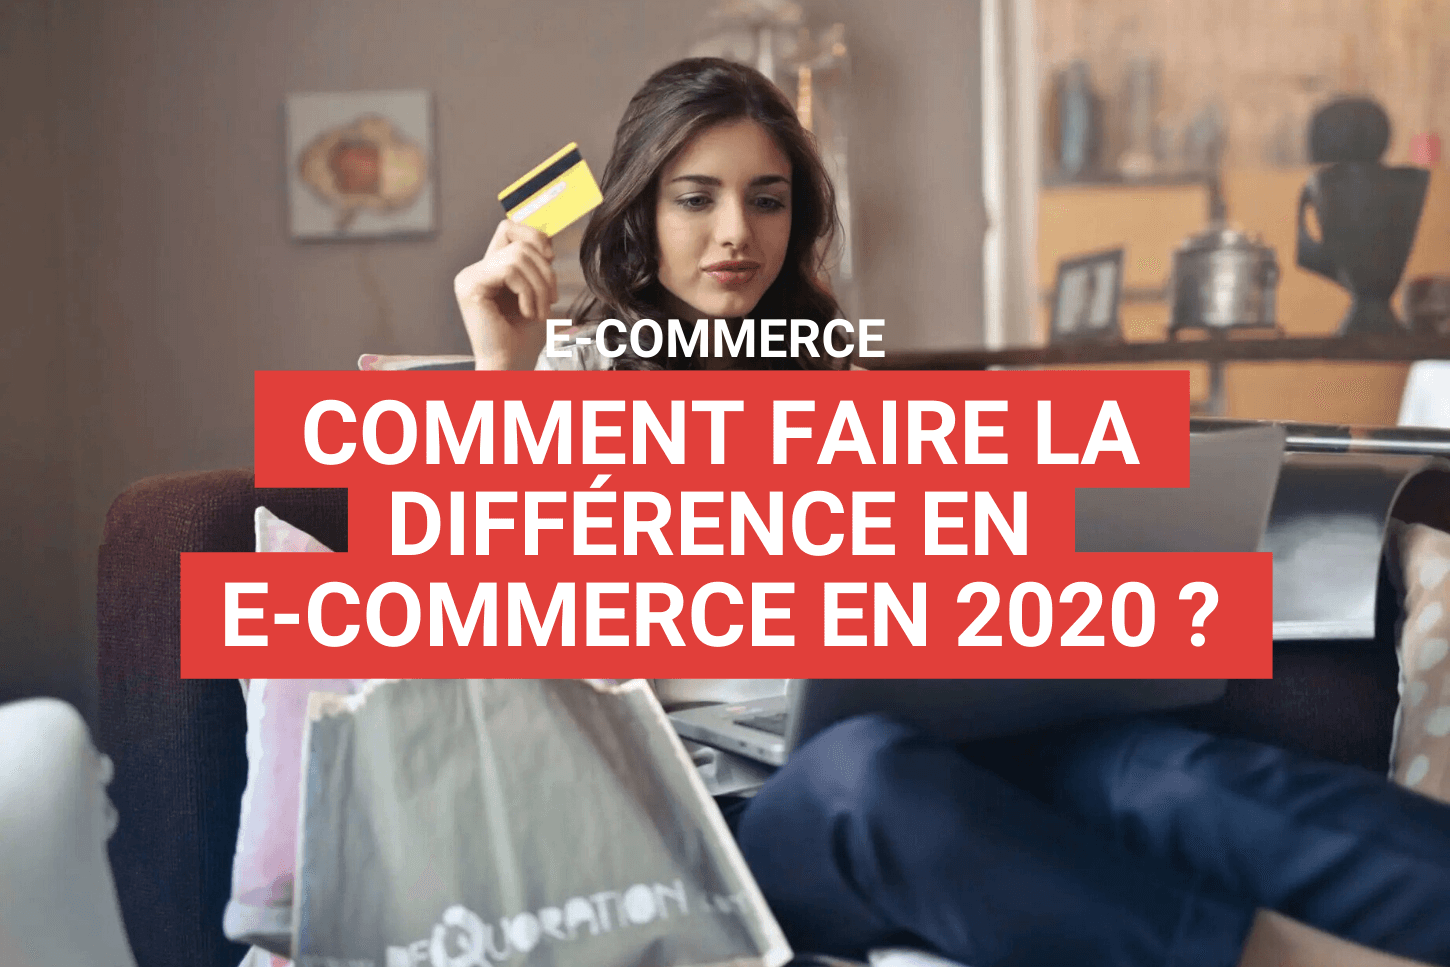 Comment faire la différence en e-commerce en 2020 ? - agence Staenk